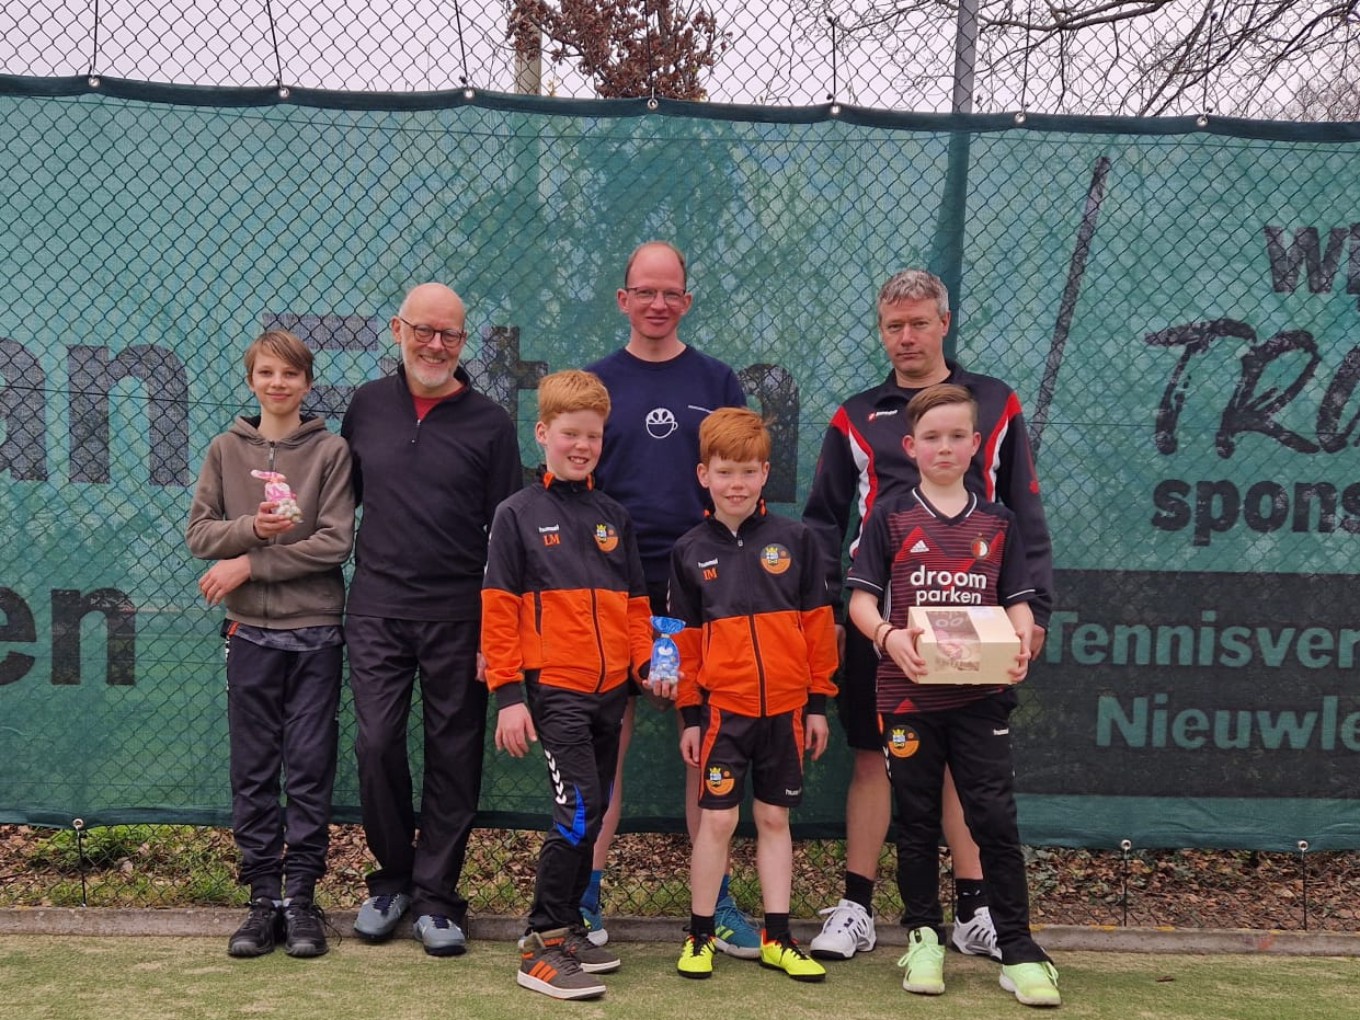 Jong&Oud toernooi bij Tennisvereniging Nieuwleusen